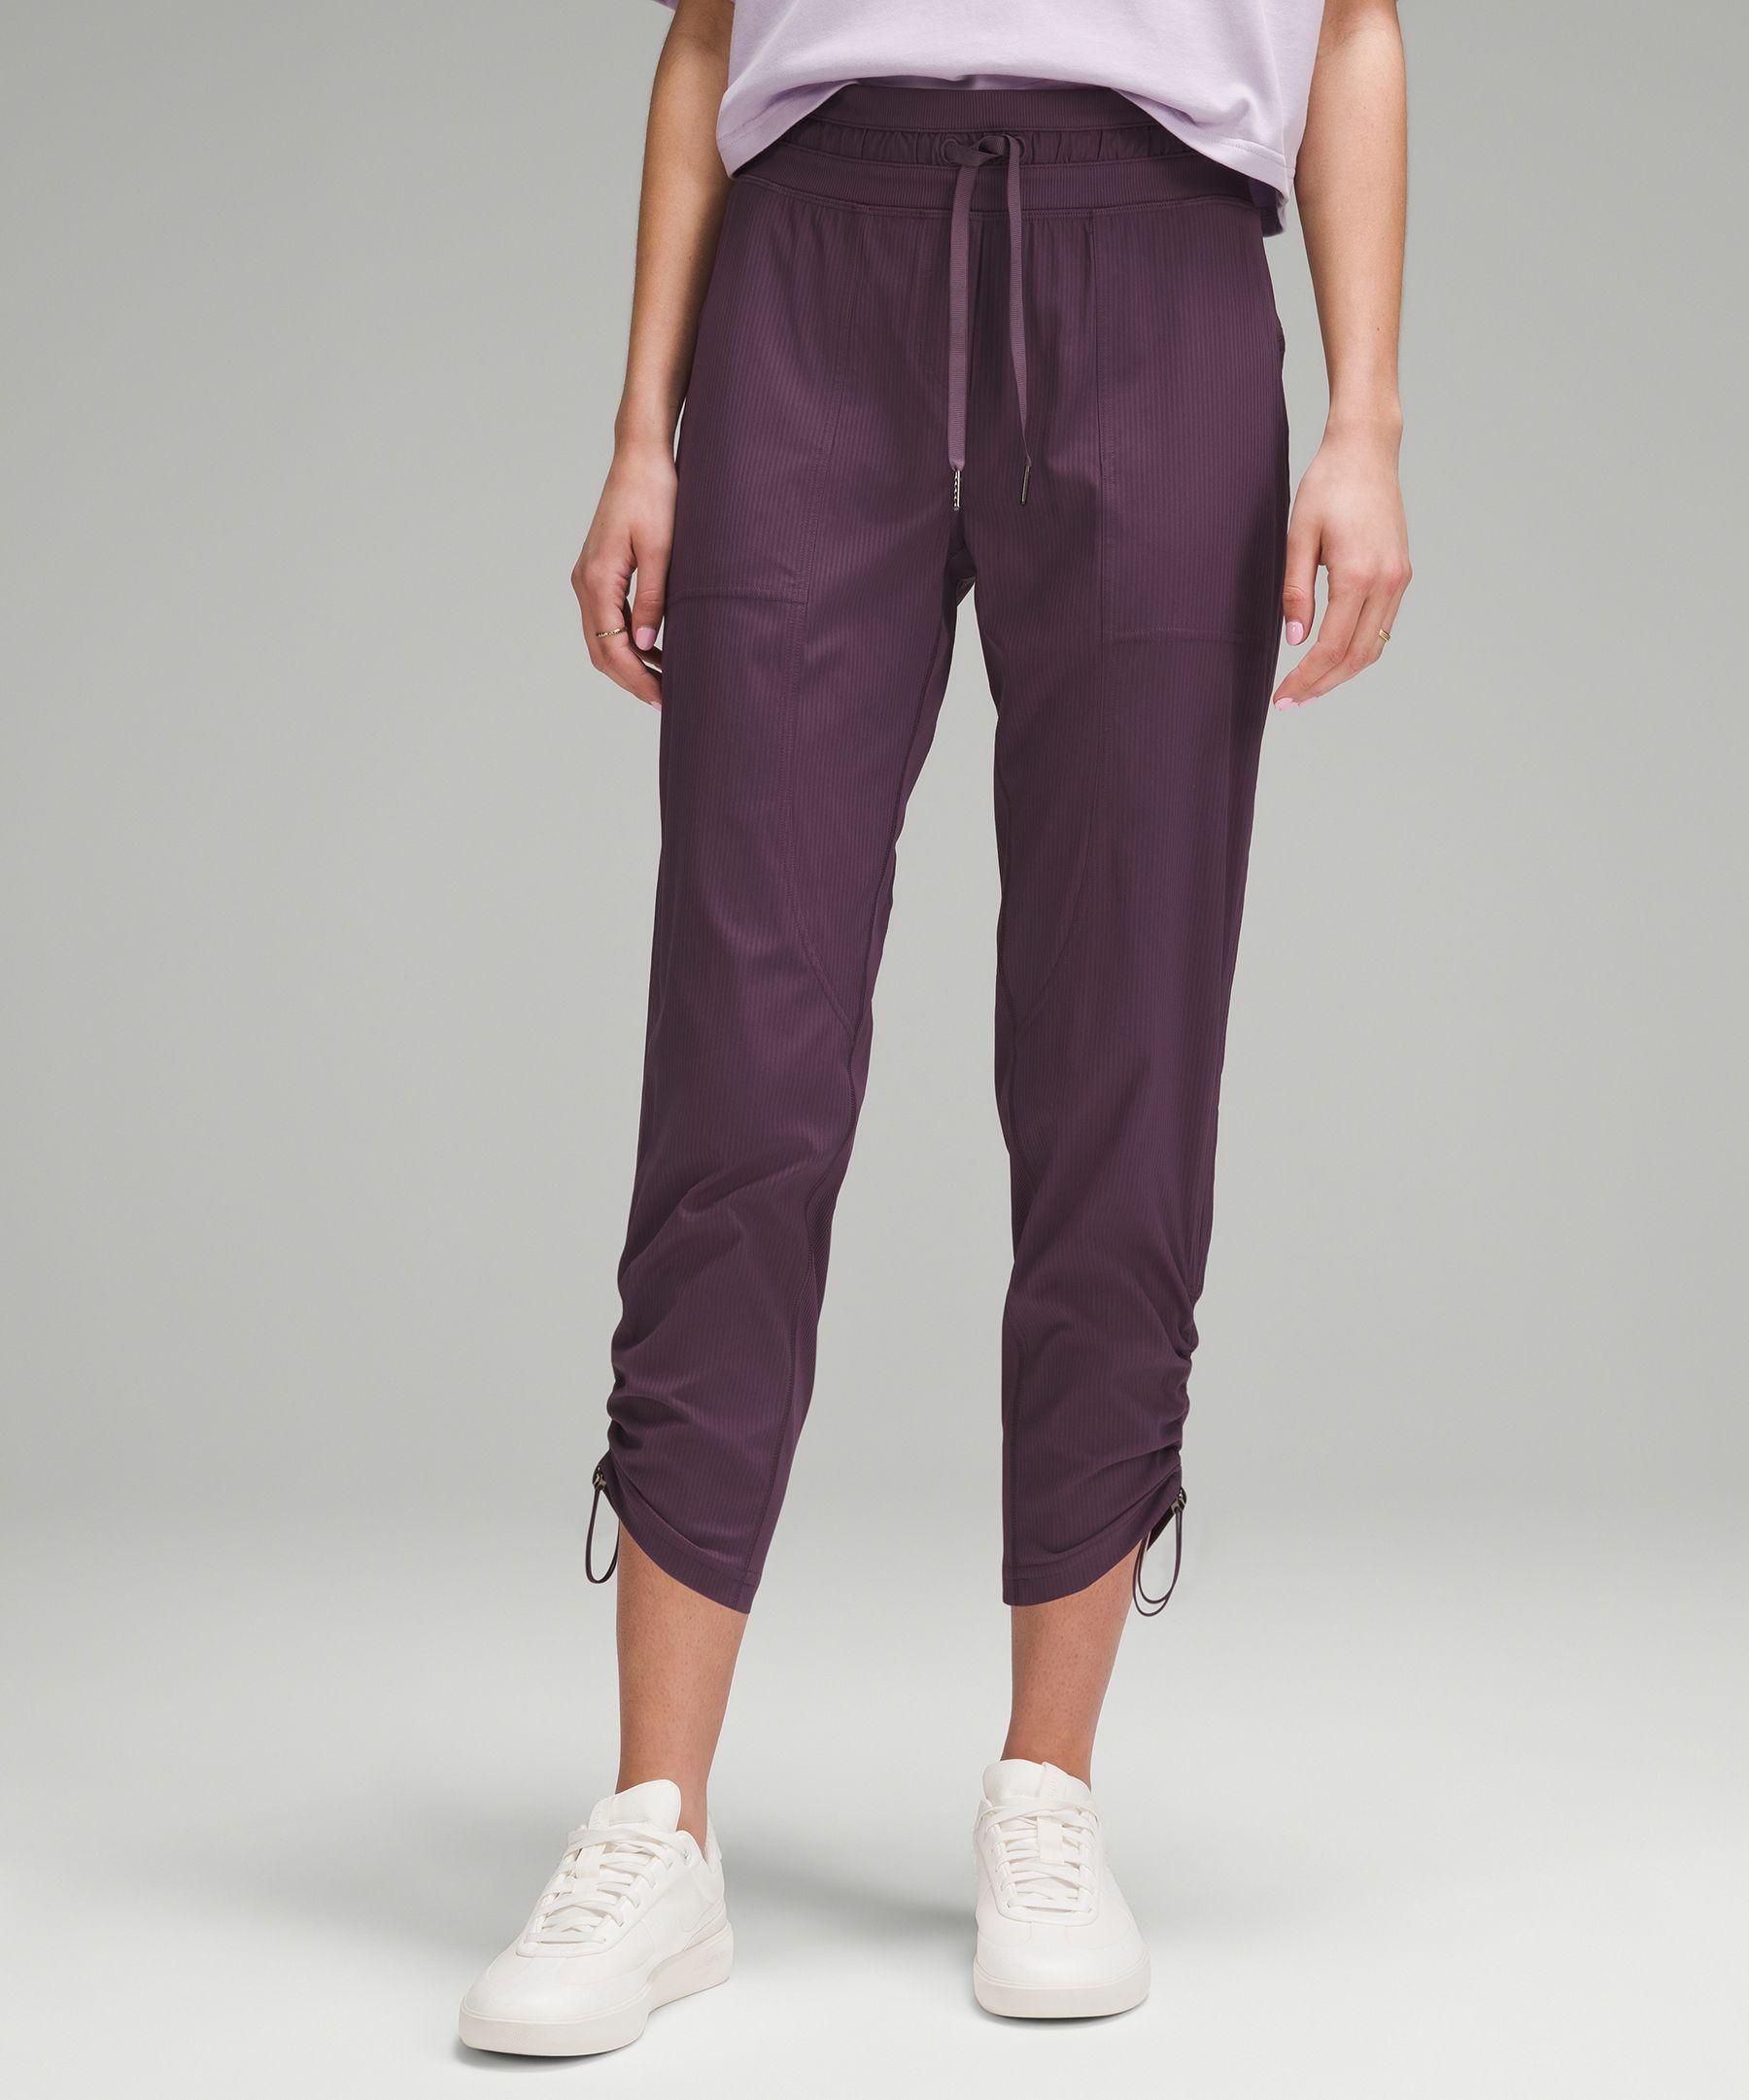 https://cdna.lystit.com/photos/lululemon/5fe99666/lululemon-athletica-designer-Grape-Thistle-Dance-Studio-Mid-rise-Cropped-Pants-Color-Purple-Size-0.jpeg